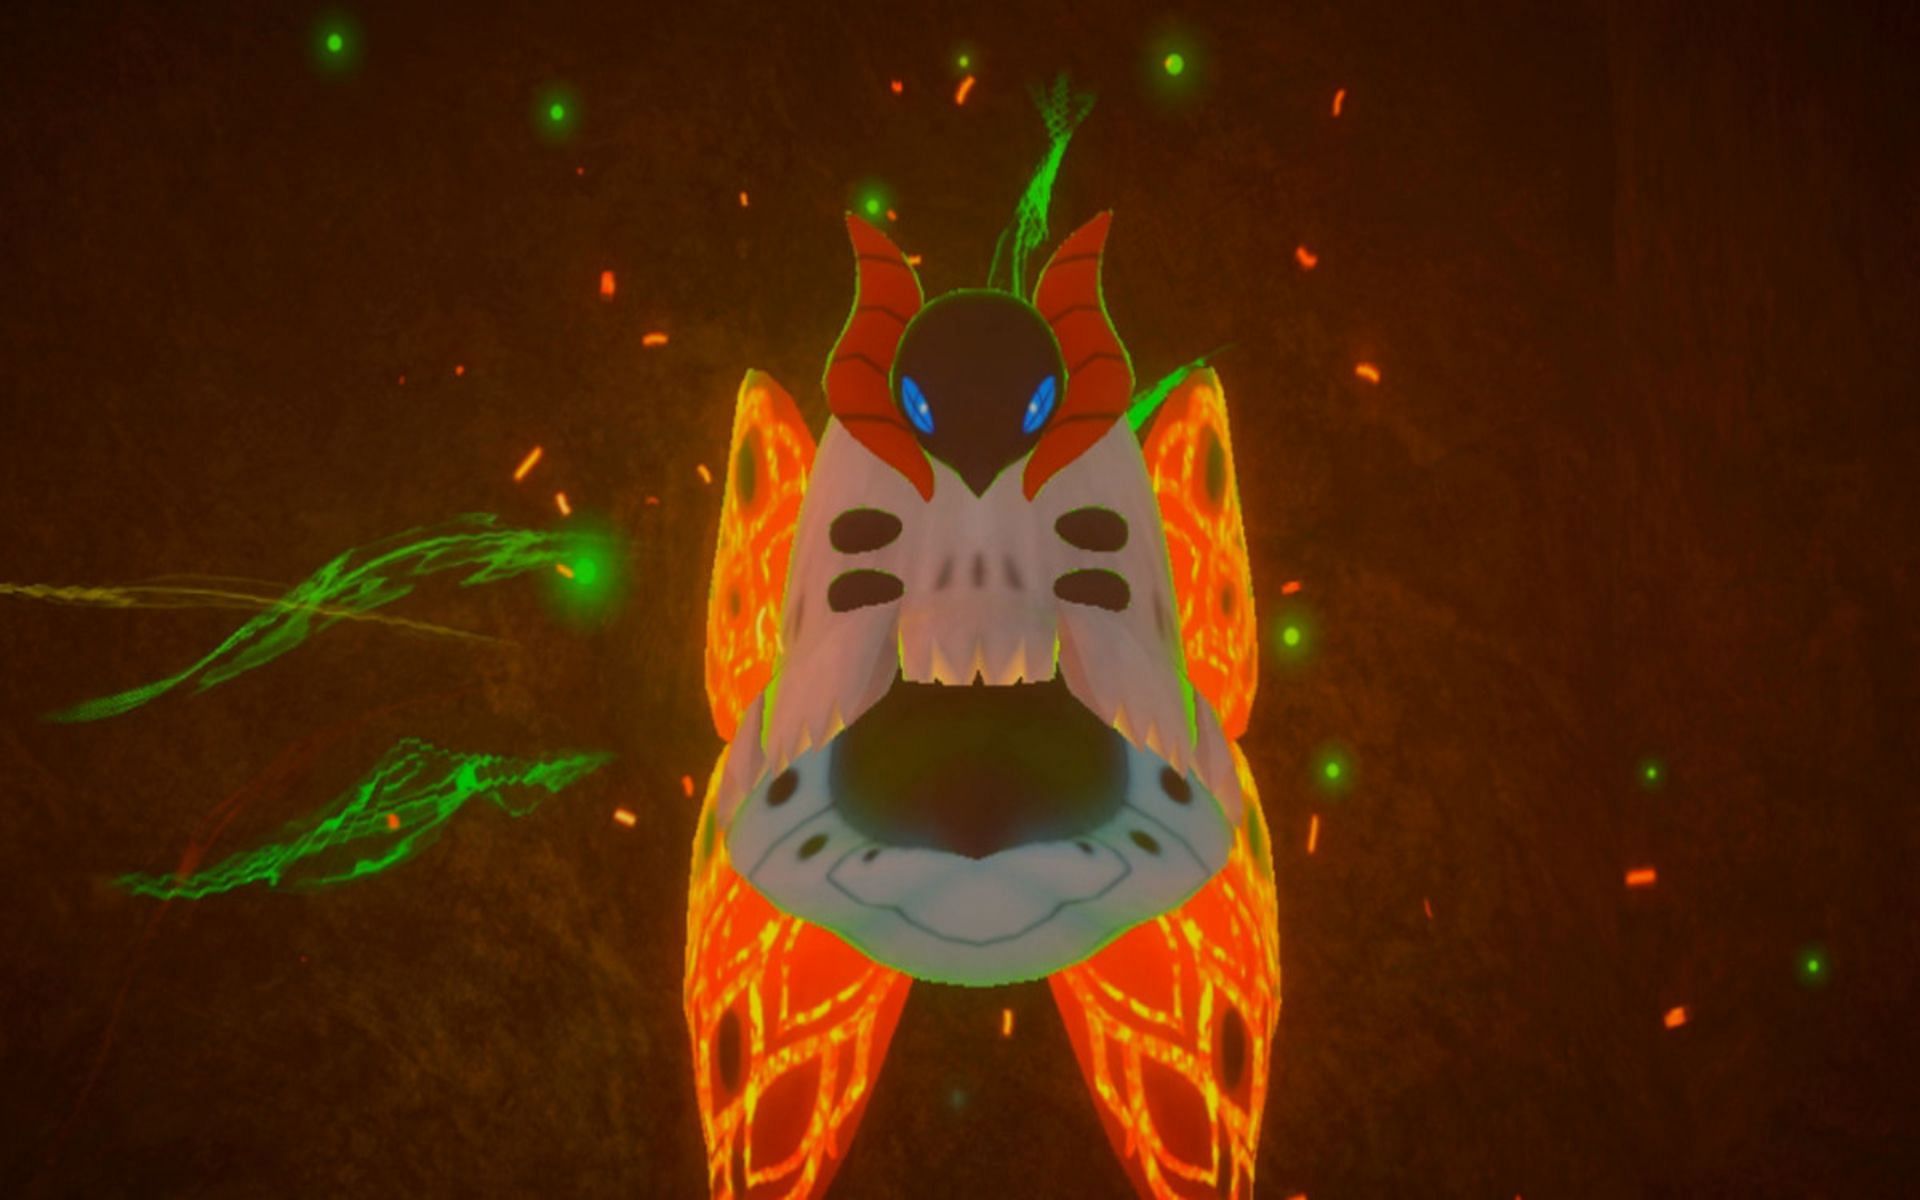 Volcarona is both Fire and Bug-type (Image via Bandai Namco)